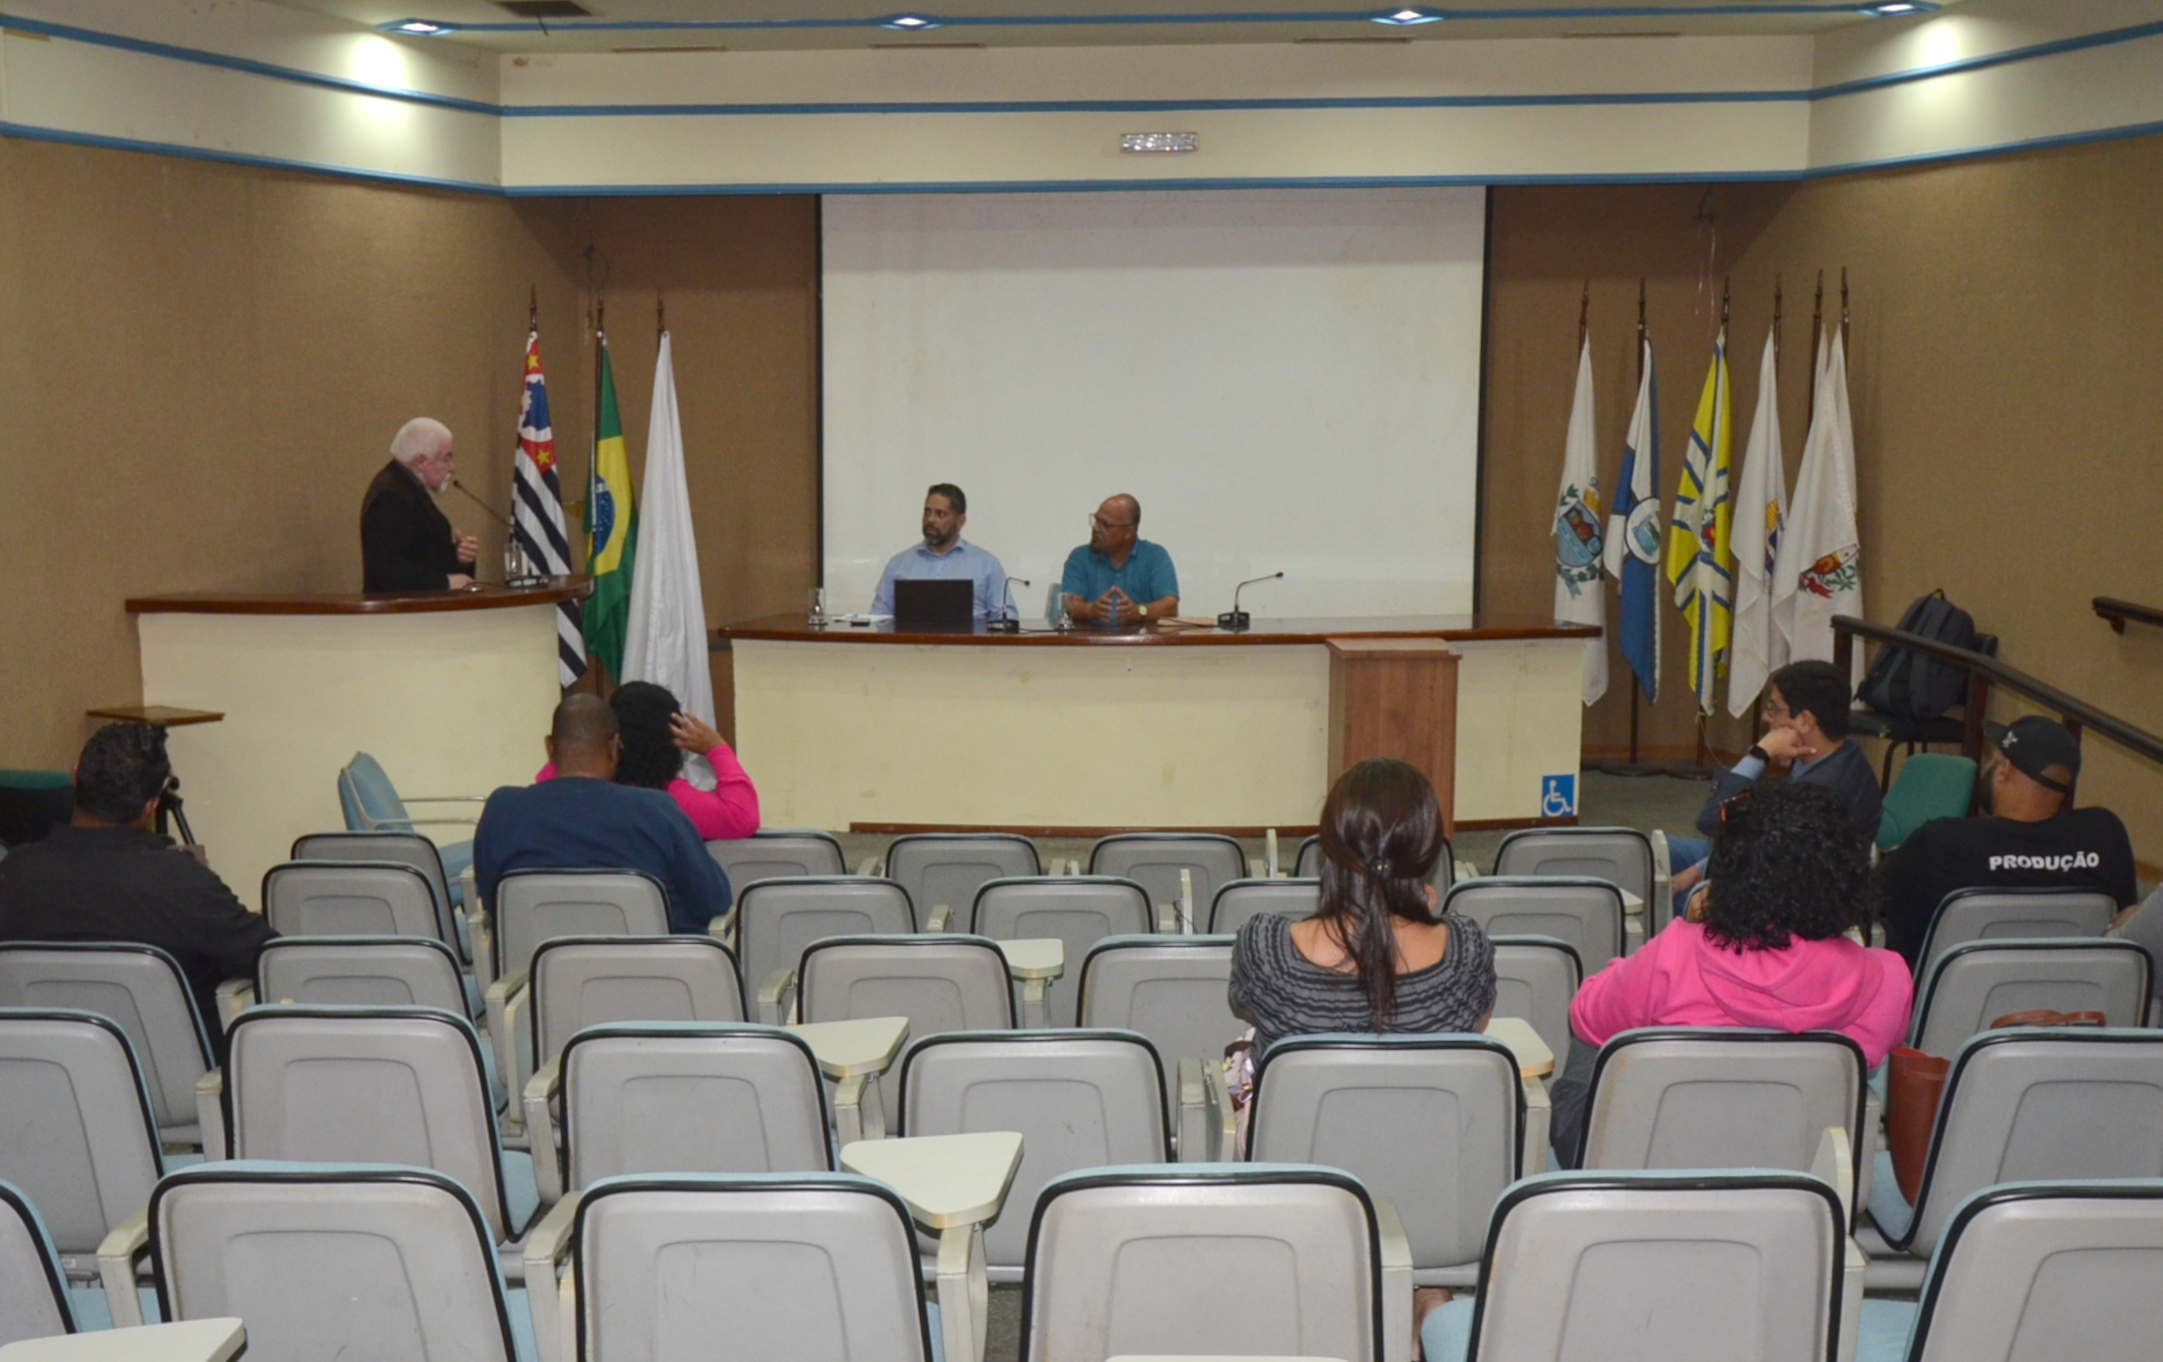 Câmara promove encontro para discussão do projeto “Cubatão Cidade Criativa” 